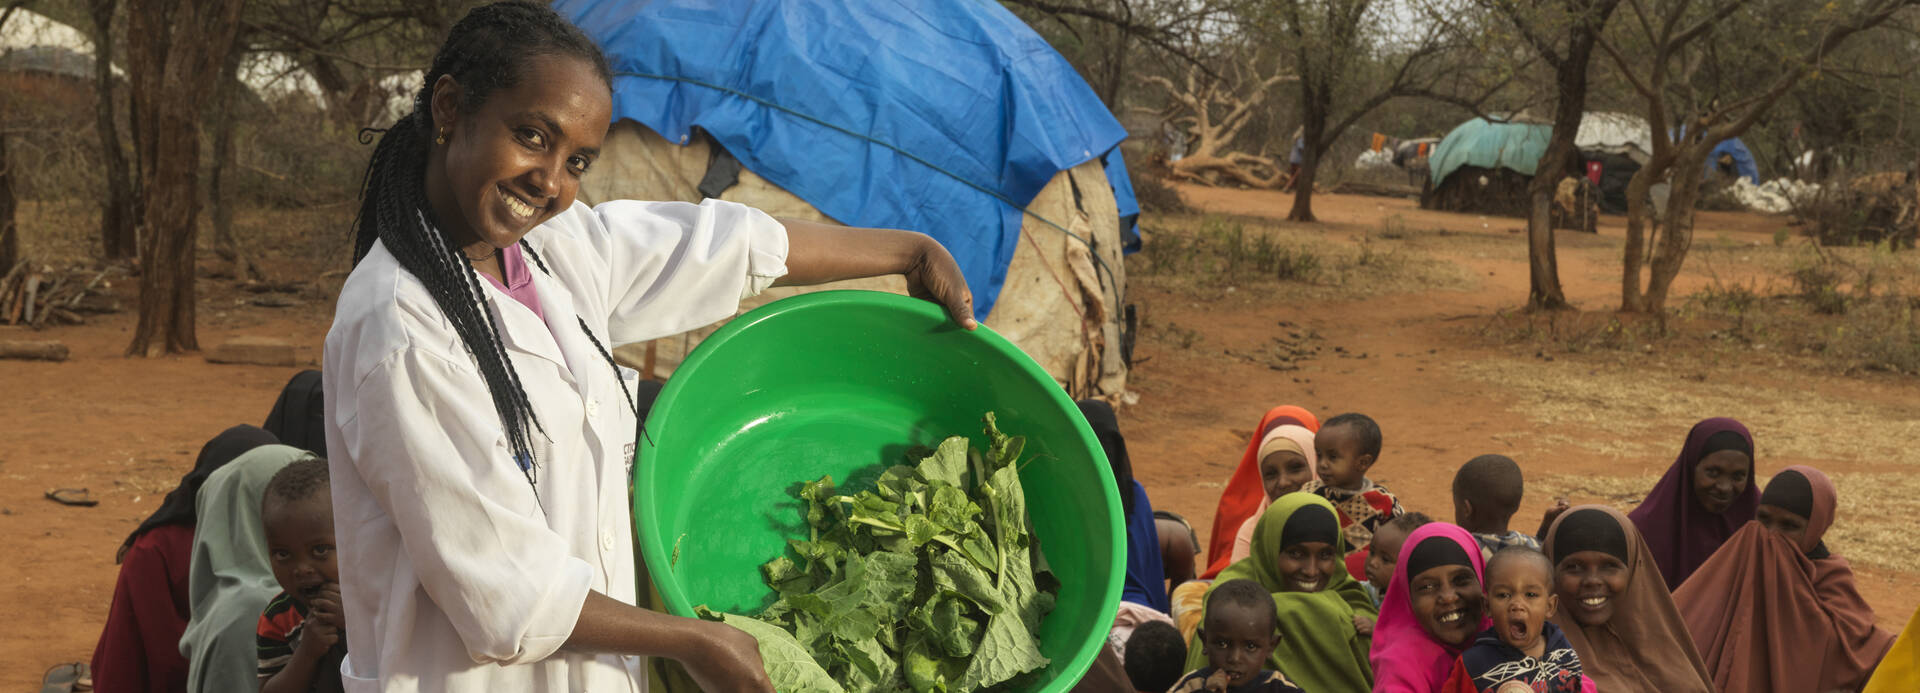 Gelaye Bekele ist Ernährungsspezialistin in Äthiopien und zeigt Familien das Kochen mit frischen Lebensmitteln; hier mit einer Schüssel Salat, im Hintergrund viele lachende Mütter mit Kindern